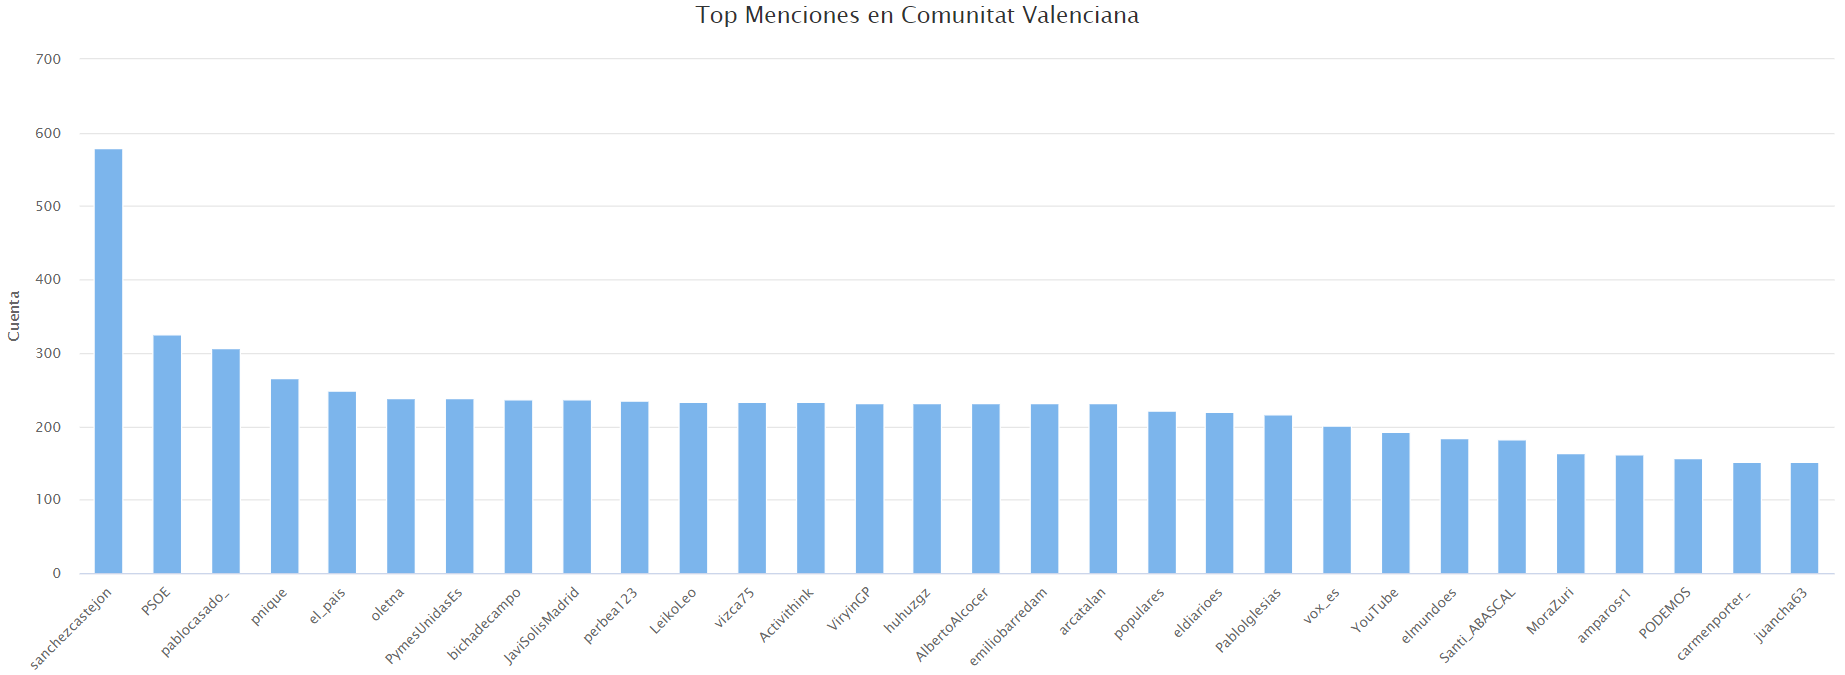 Menciones a usuarios más frecuentes en la Comunidad Valenciana